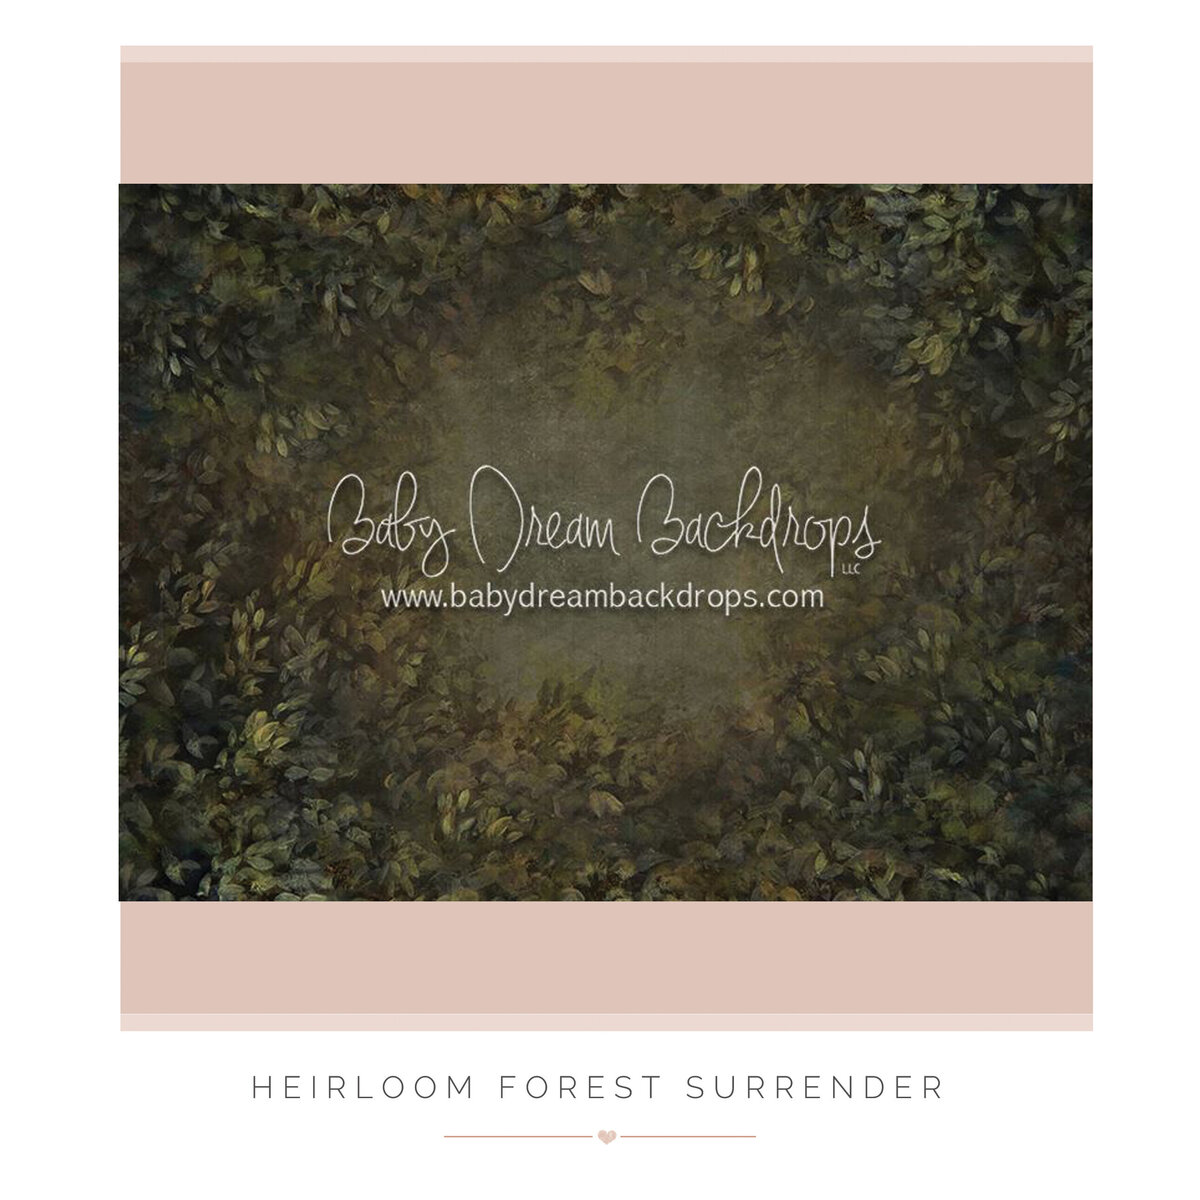 Heirloom Forest Surrender